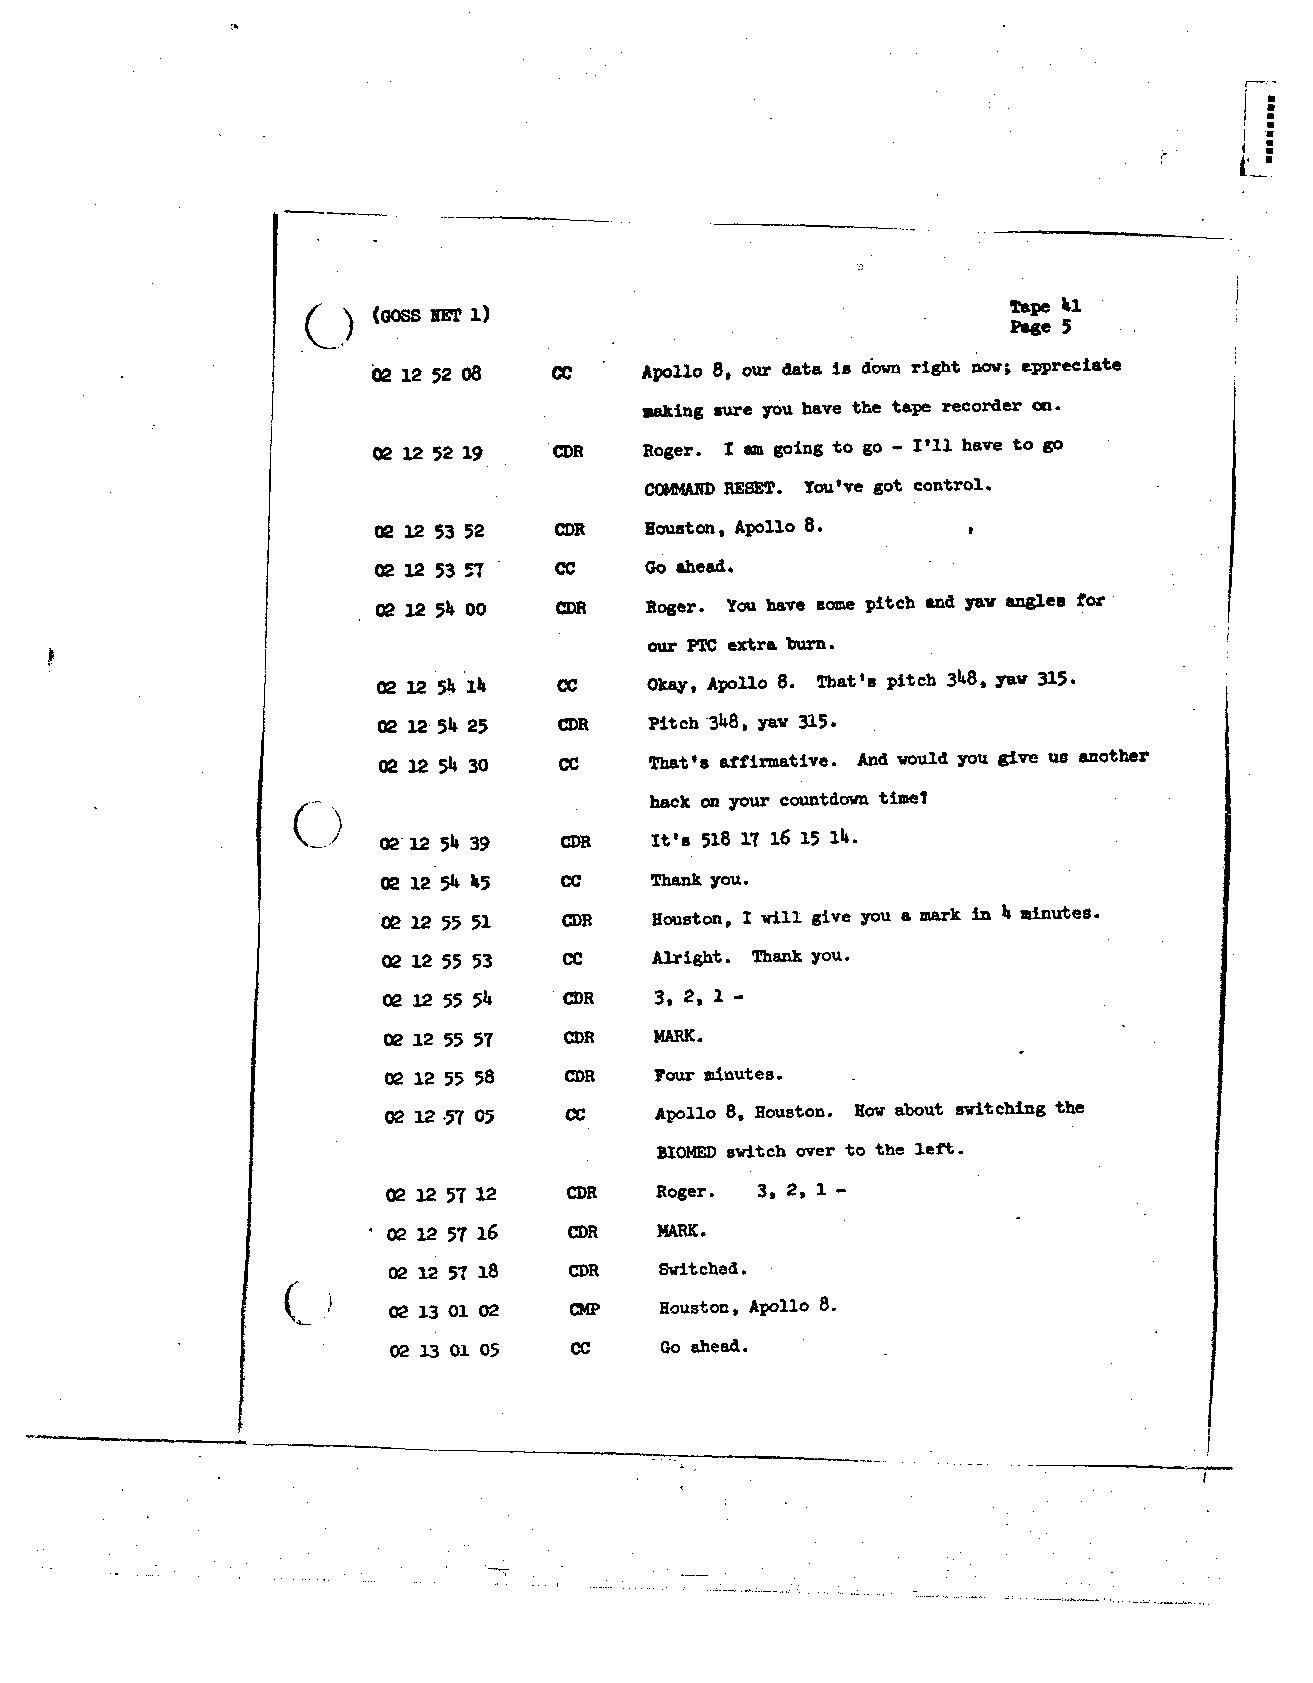 Page 316 of Apollo 8’s original transcript